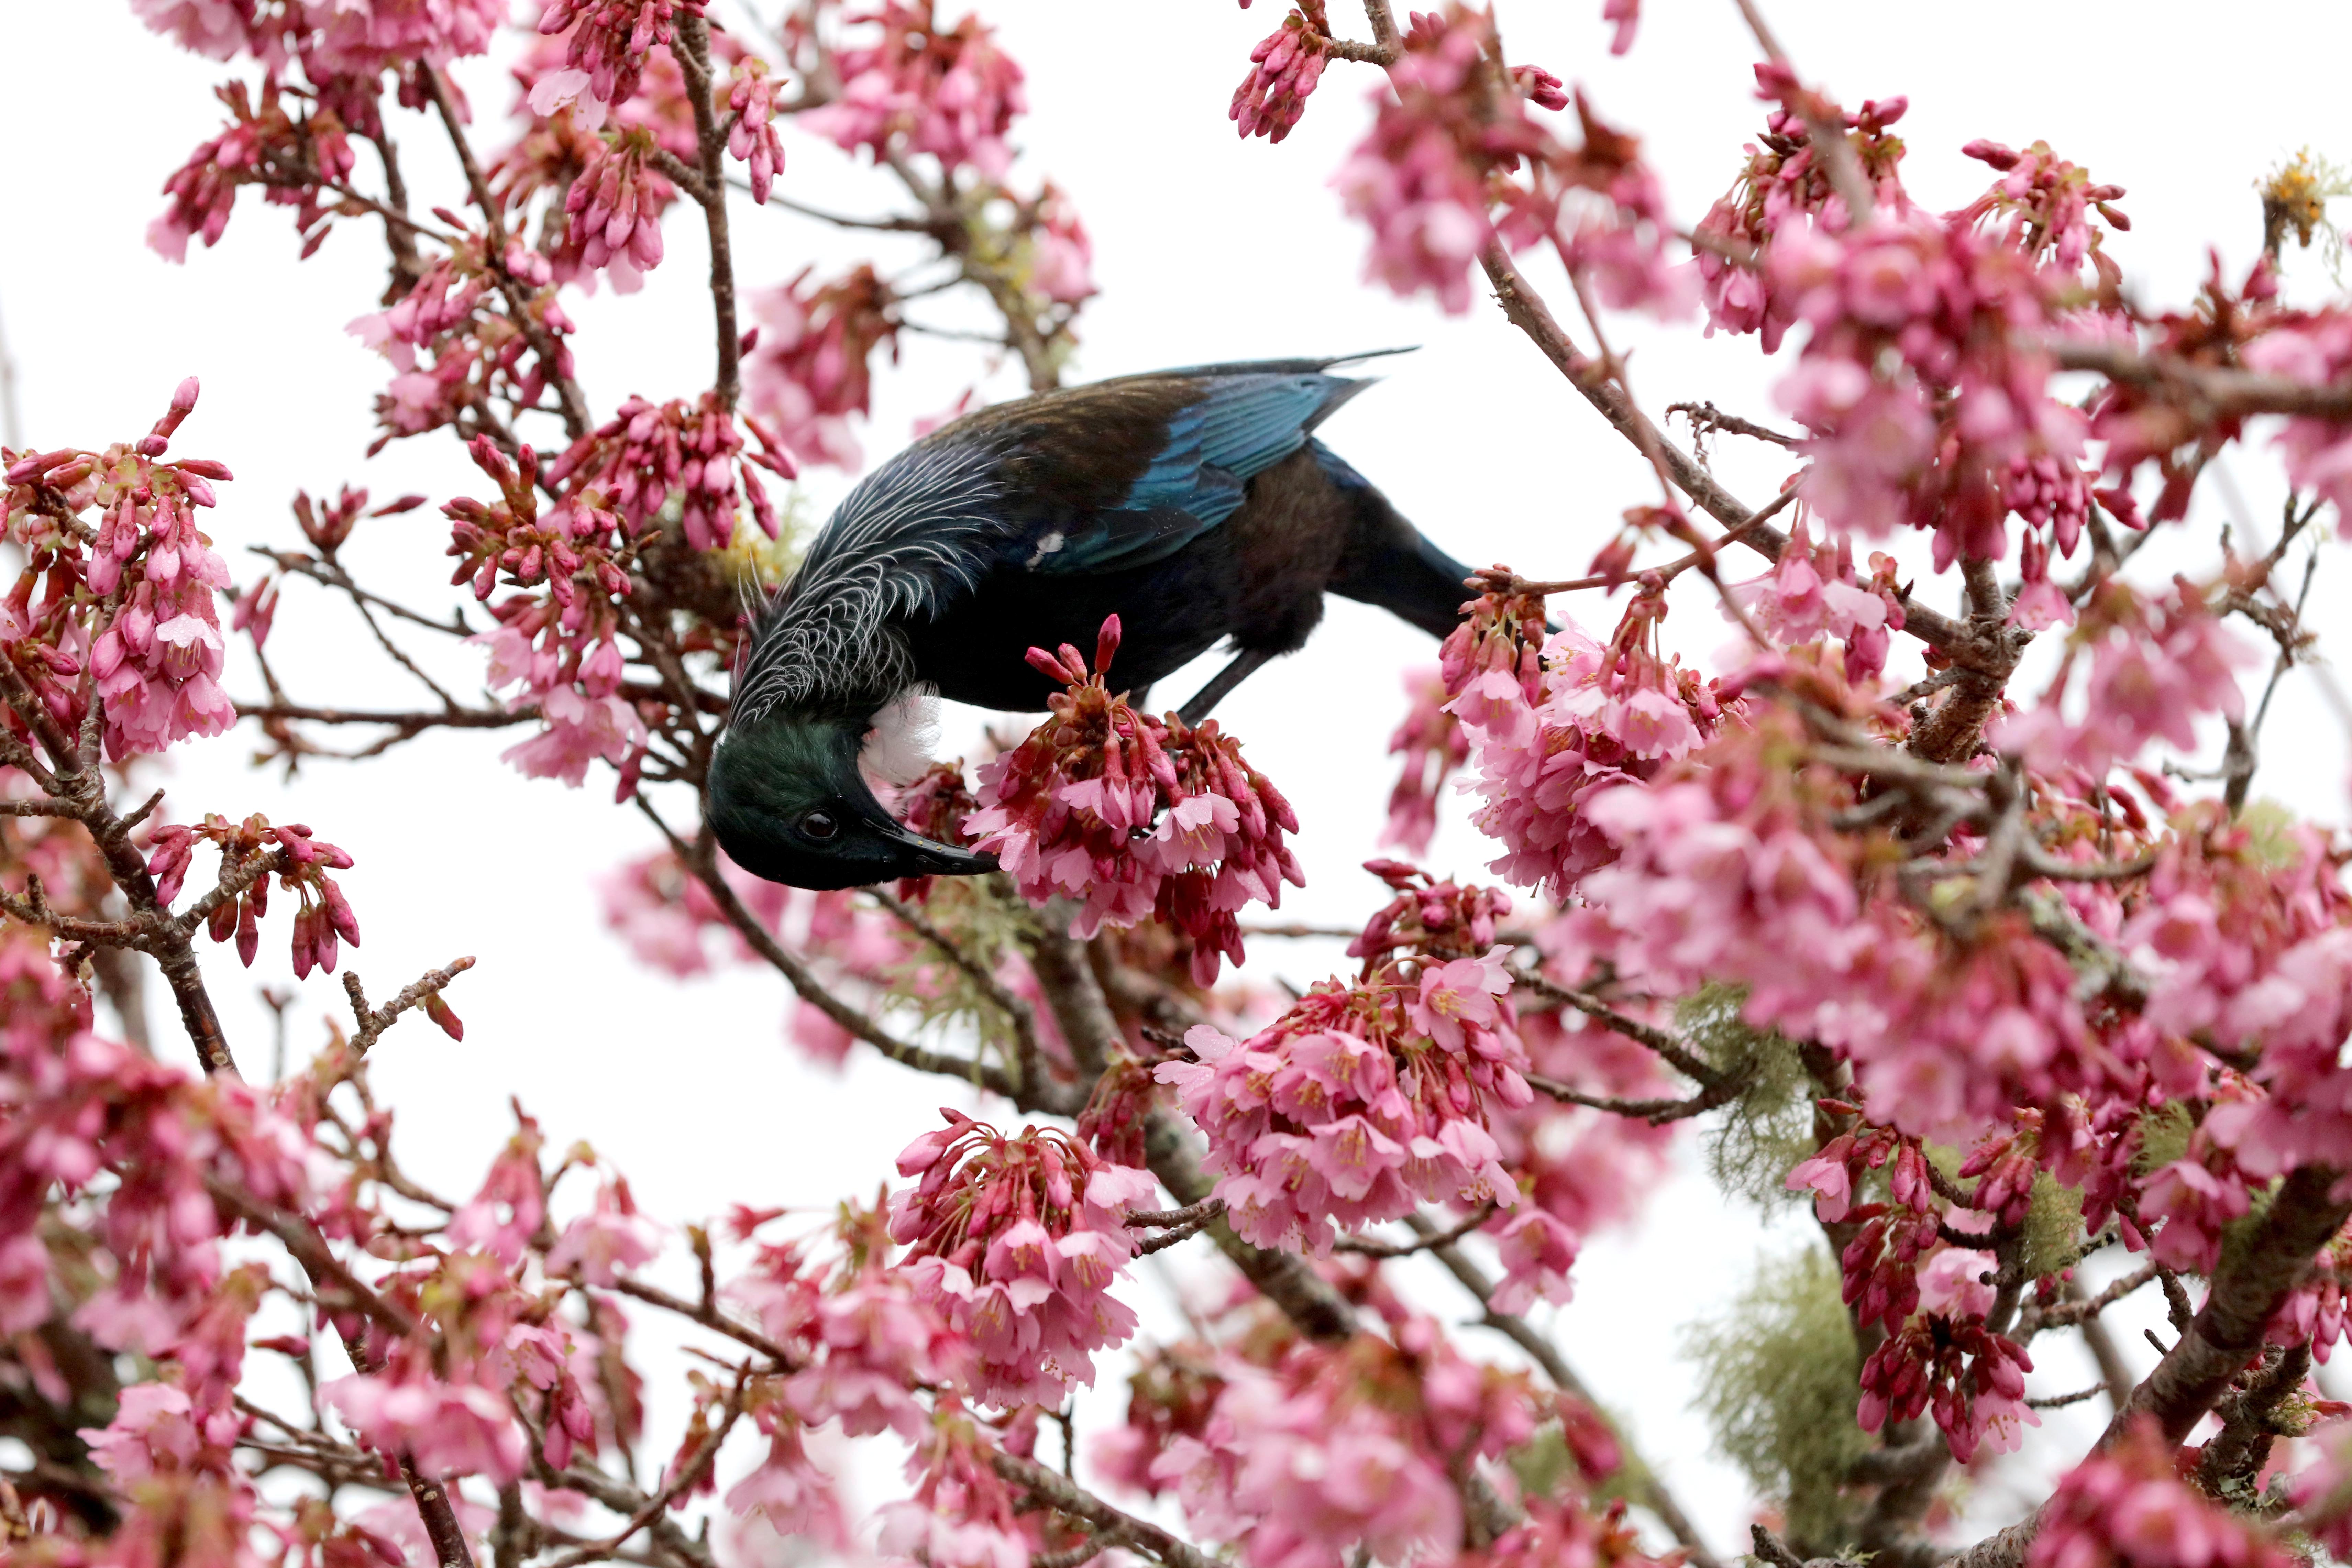 春天的美景 鸟语花香图片